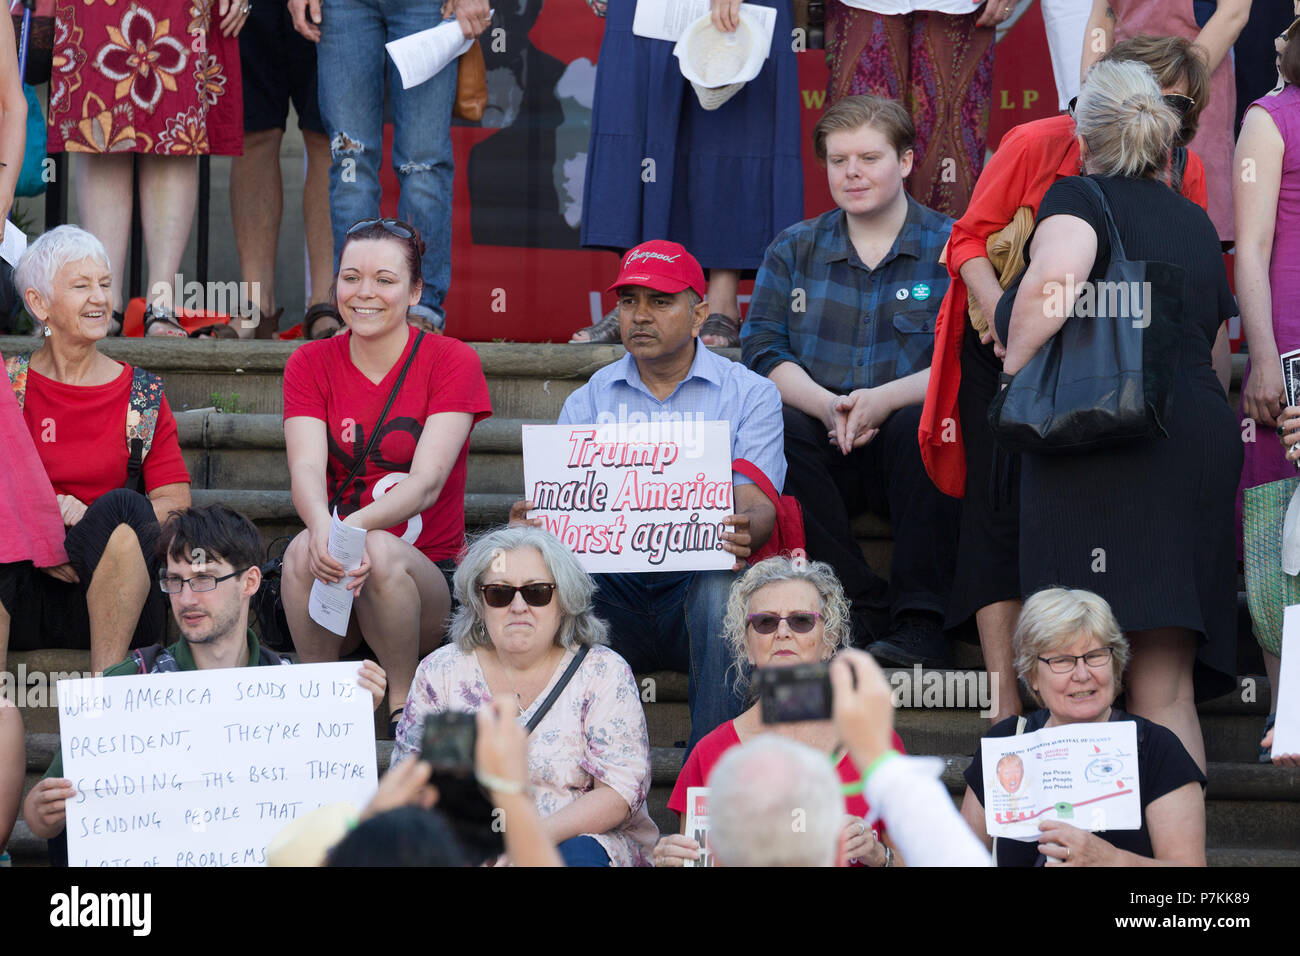 Liverpool, Regno Unito. Il 7 luglio 2018. I manifestanti si raccolgono in un rally a Liverpool per protestare contro la prossima visita nel Regno Unito del Presidente americano Donald Trump. Credito: Ken Biggs/Alamy Live News. Foto Stock